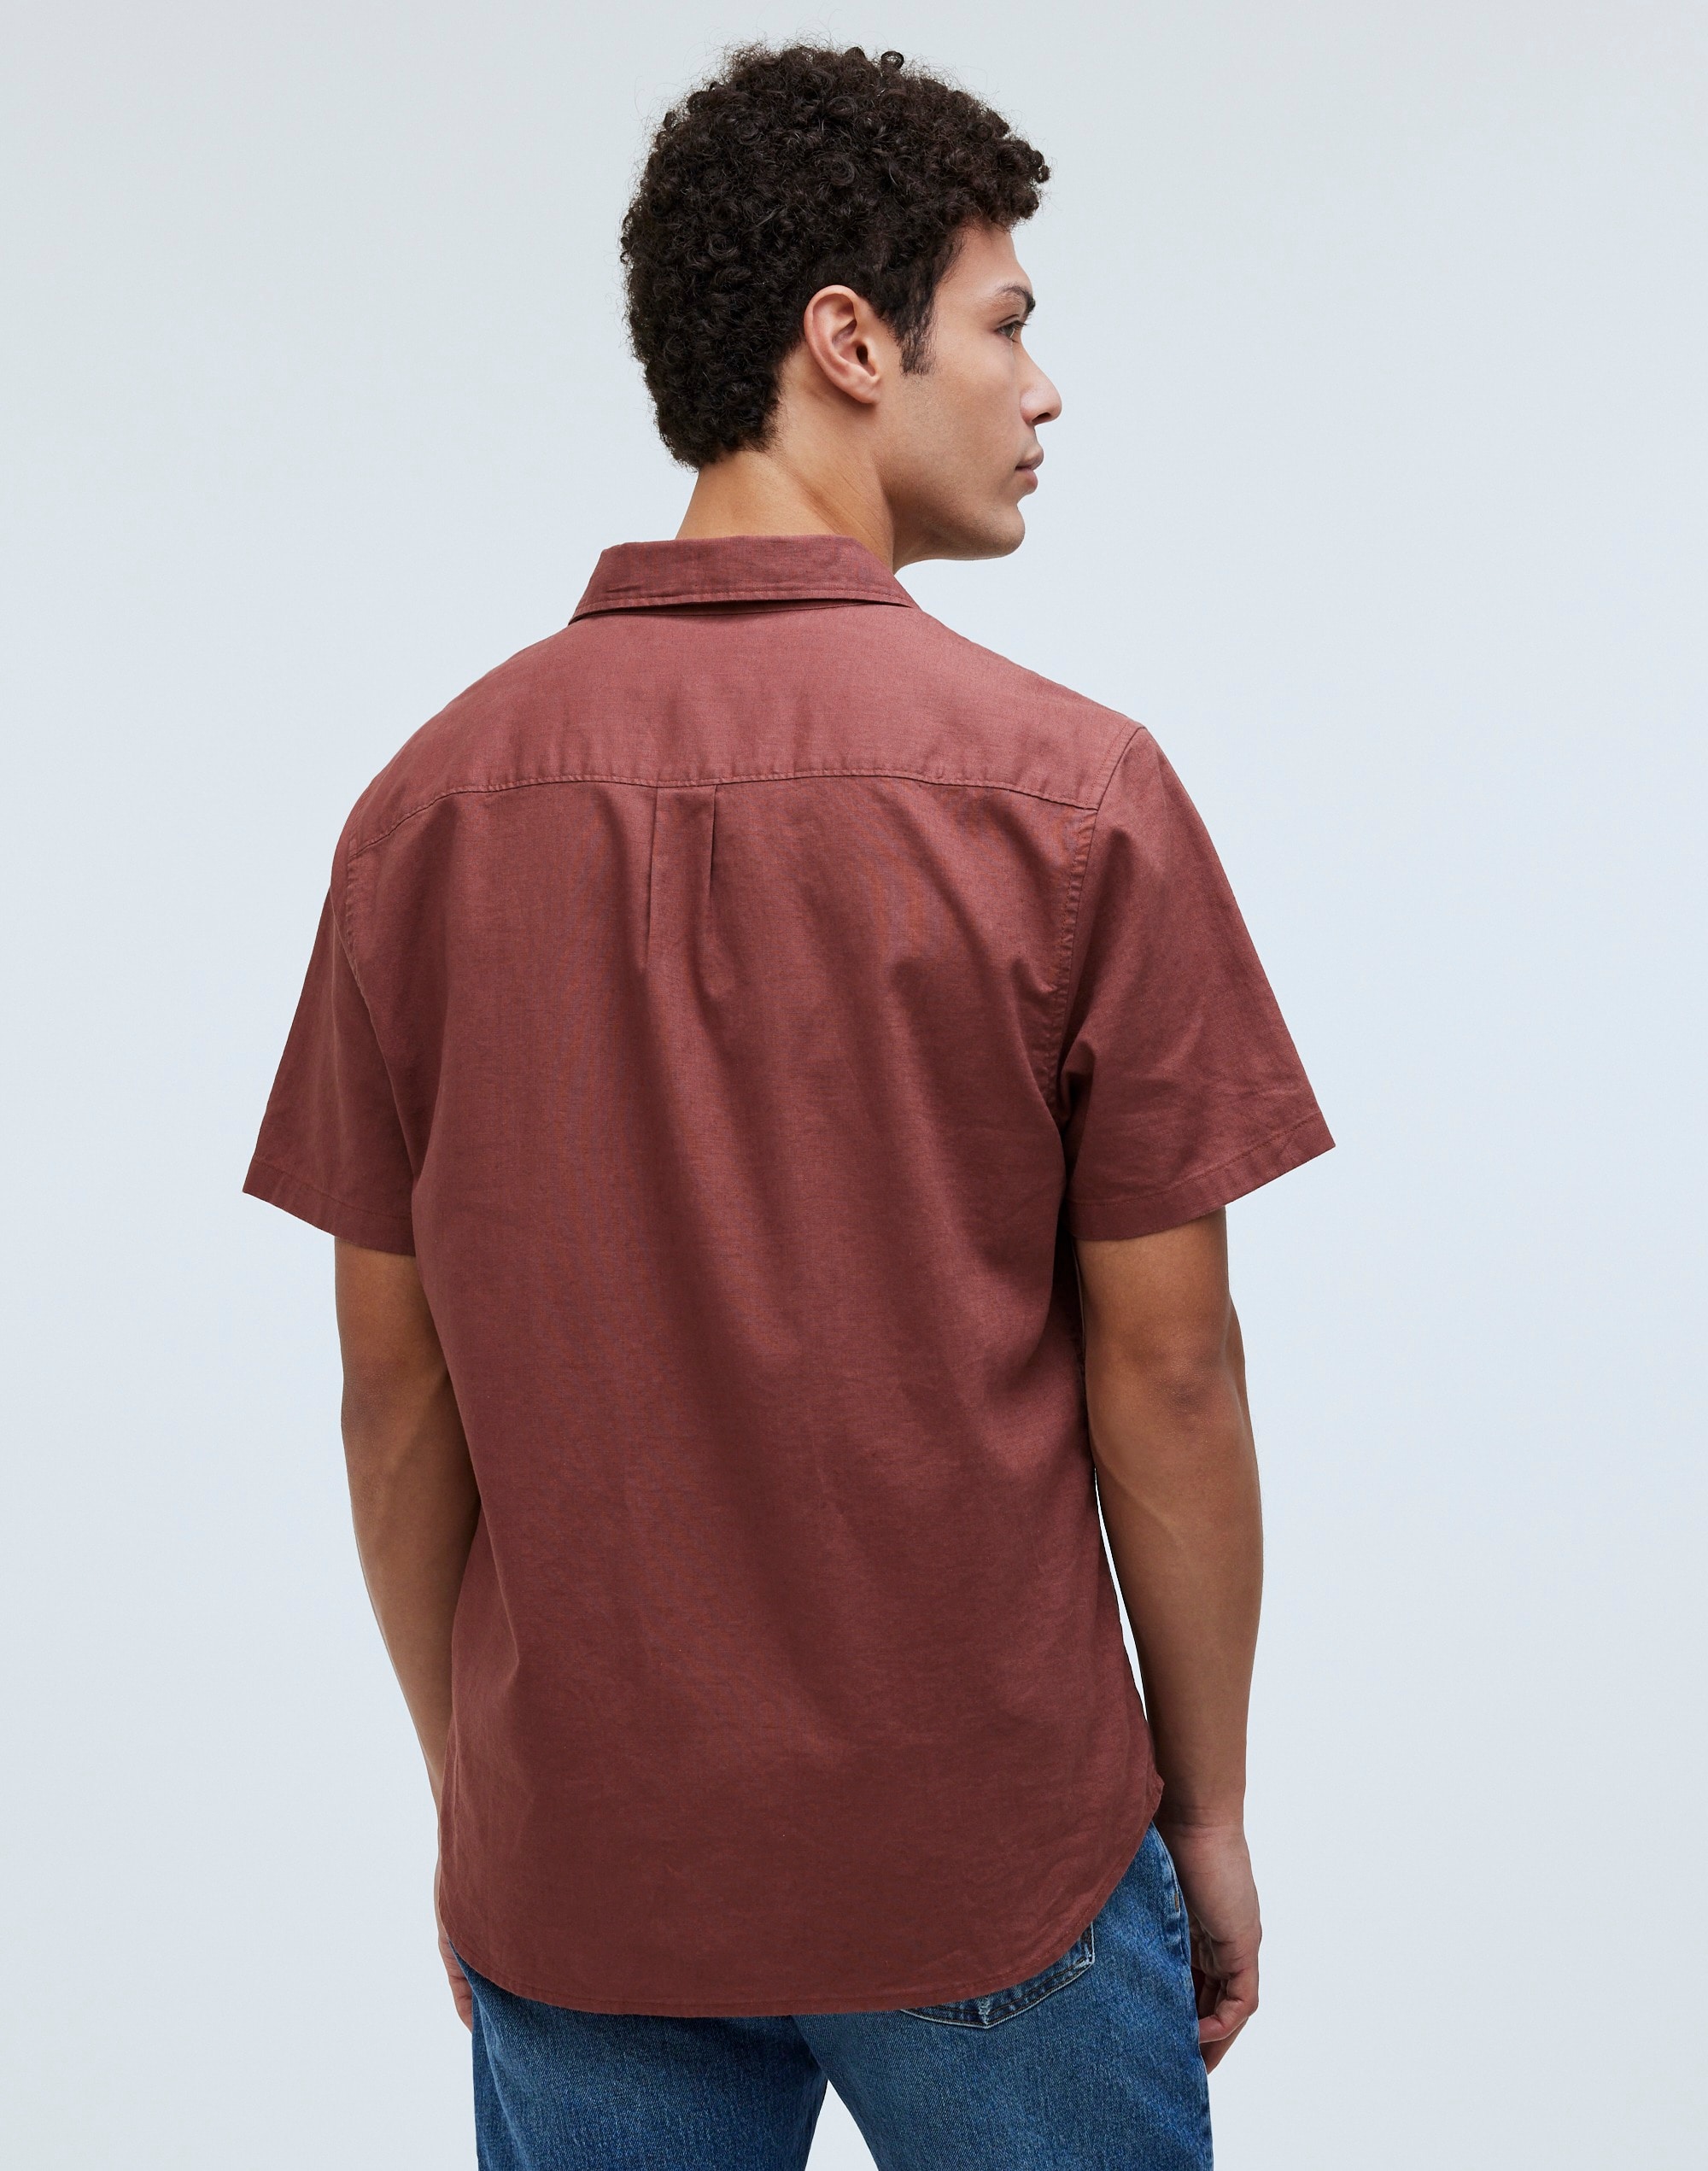 Perfect Short-Sleeve Shirt Hemp-Cotton Blend